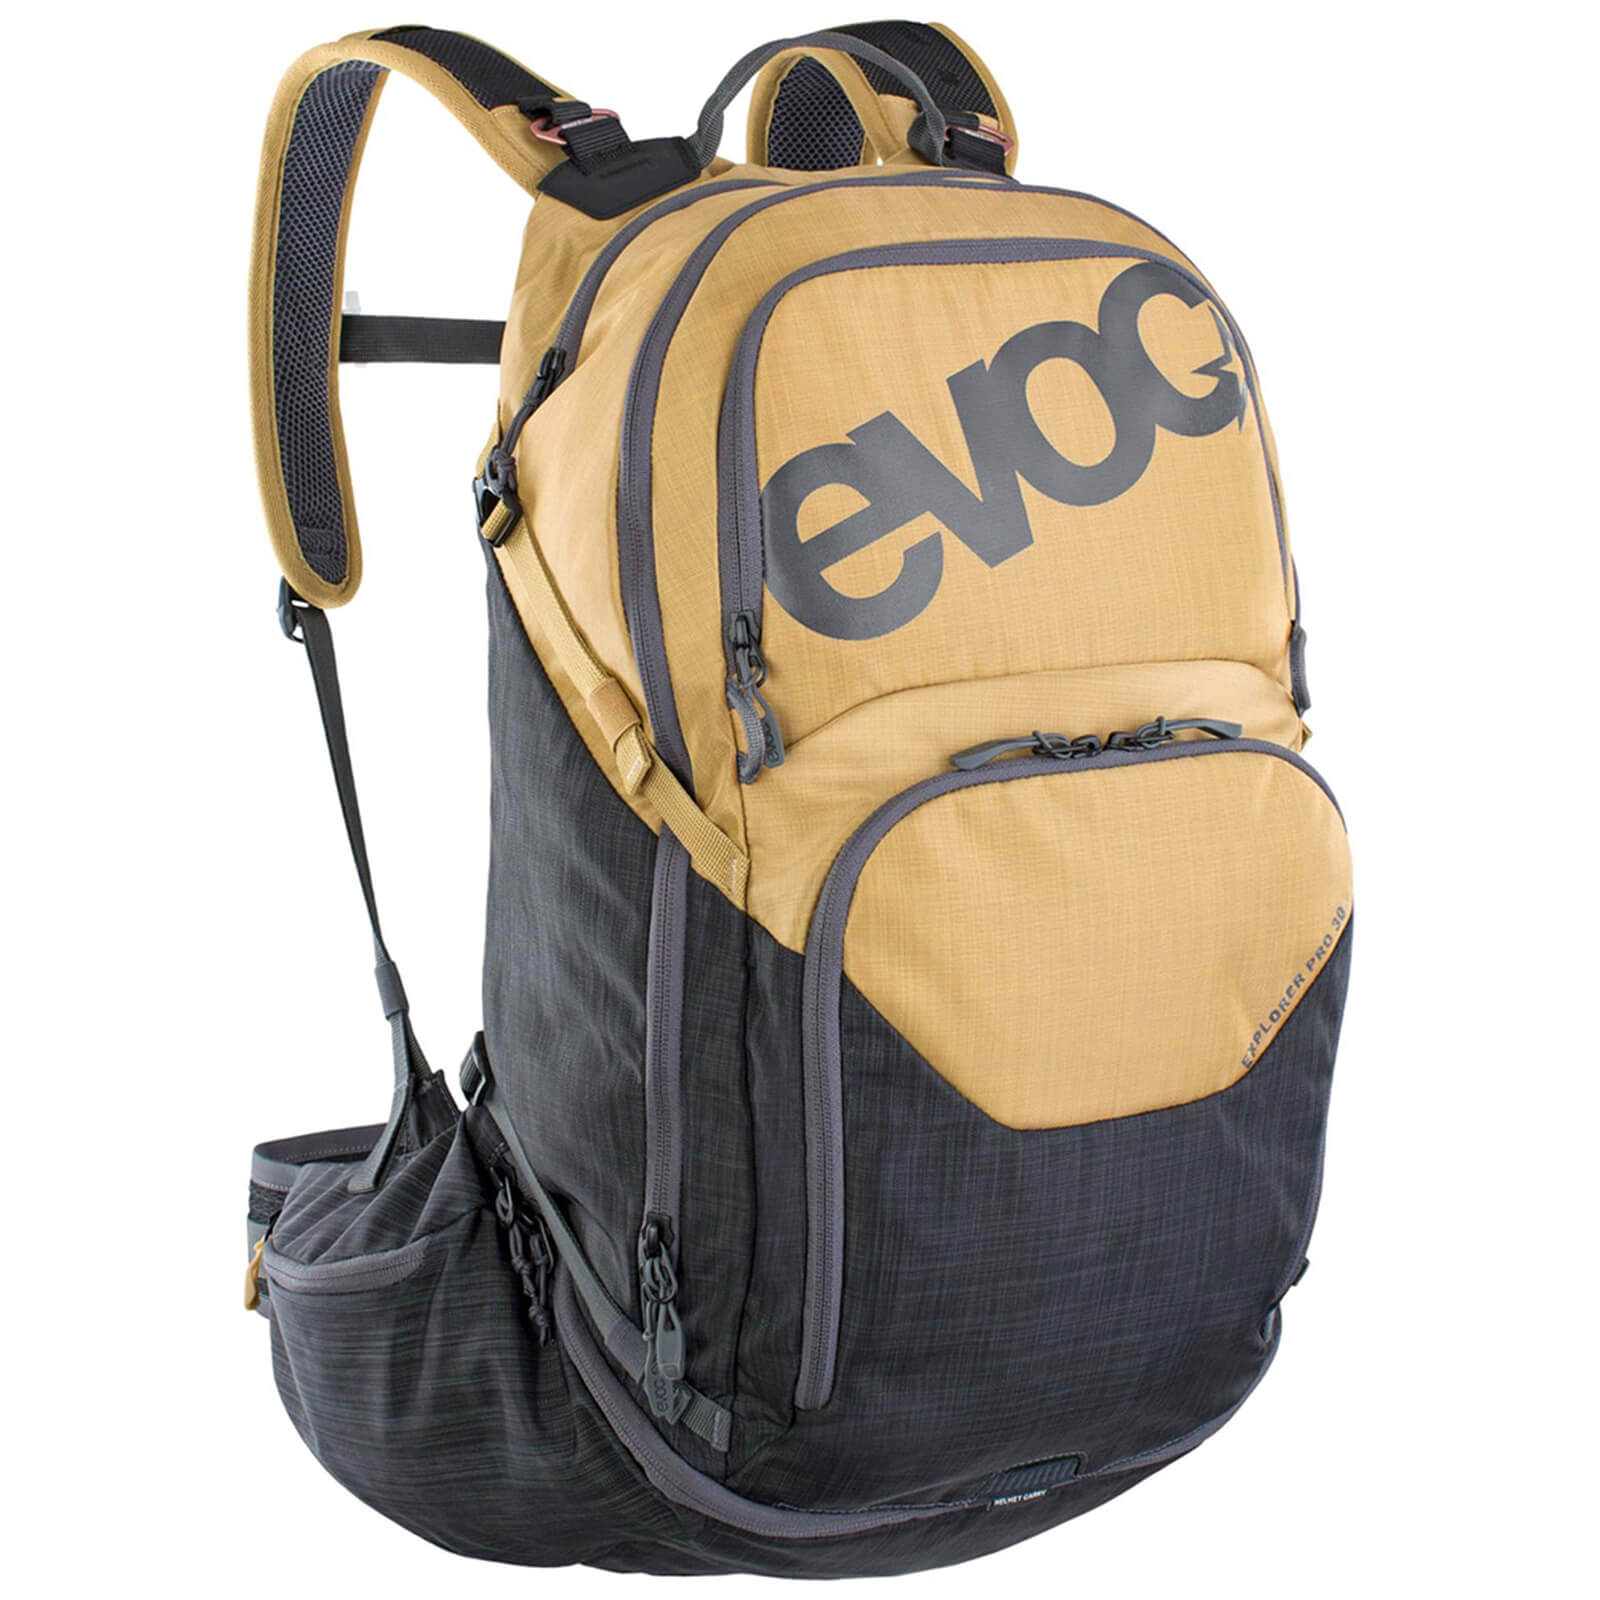 Evoc Explorer Pro 30L Performance Backpack - Gold/Carbon Grey